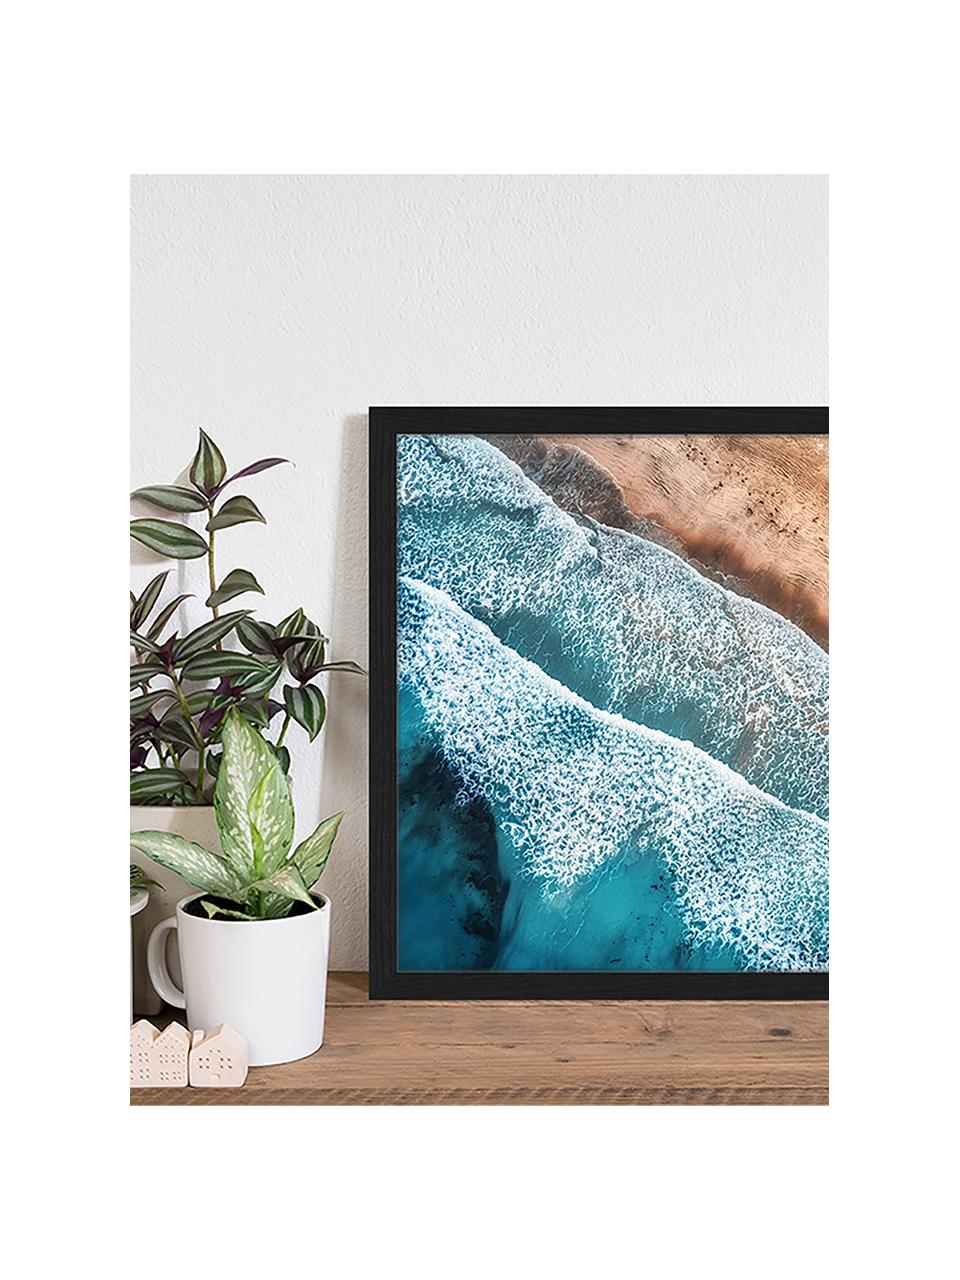 Gerahmter Digitaldruck Aerial View Of Mediterranean Sea, Bild: Digitaldruck auf Papier, , Rahmen: Holz, lackiert, Front: Plexiglas, Bunt, B 53 x H 43 cm